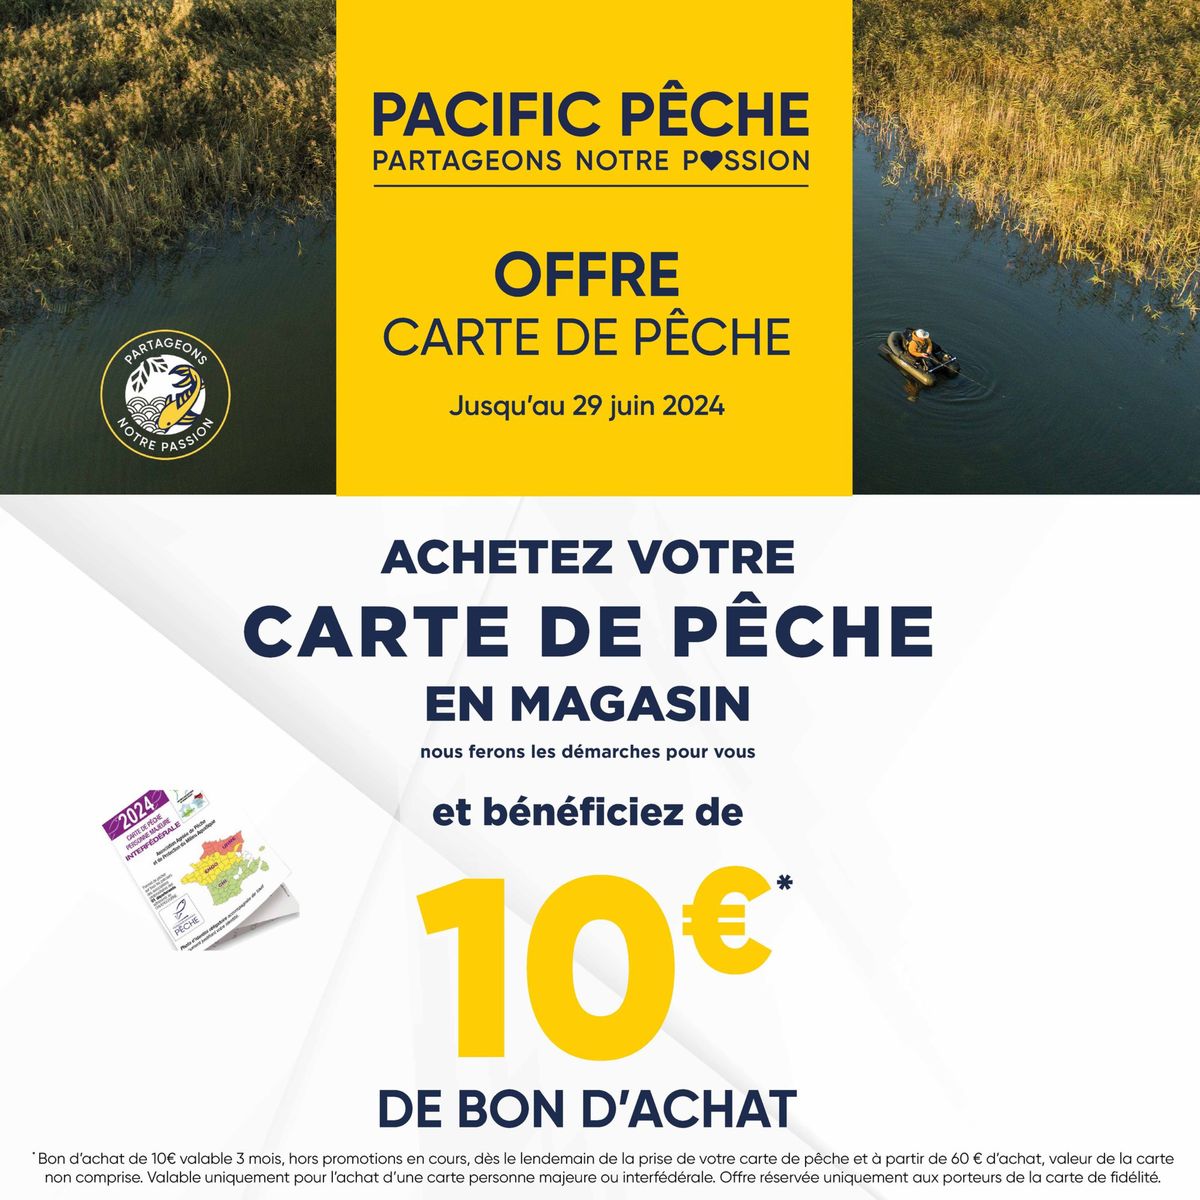 Catalogue Prenez votre Carte de pêche 2024 dans l’un de nos 42 magasins Pacific Pêche, nous vous offrons 10€ en bon d'achat* !, page 00001